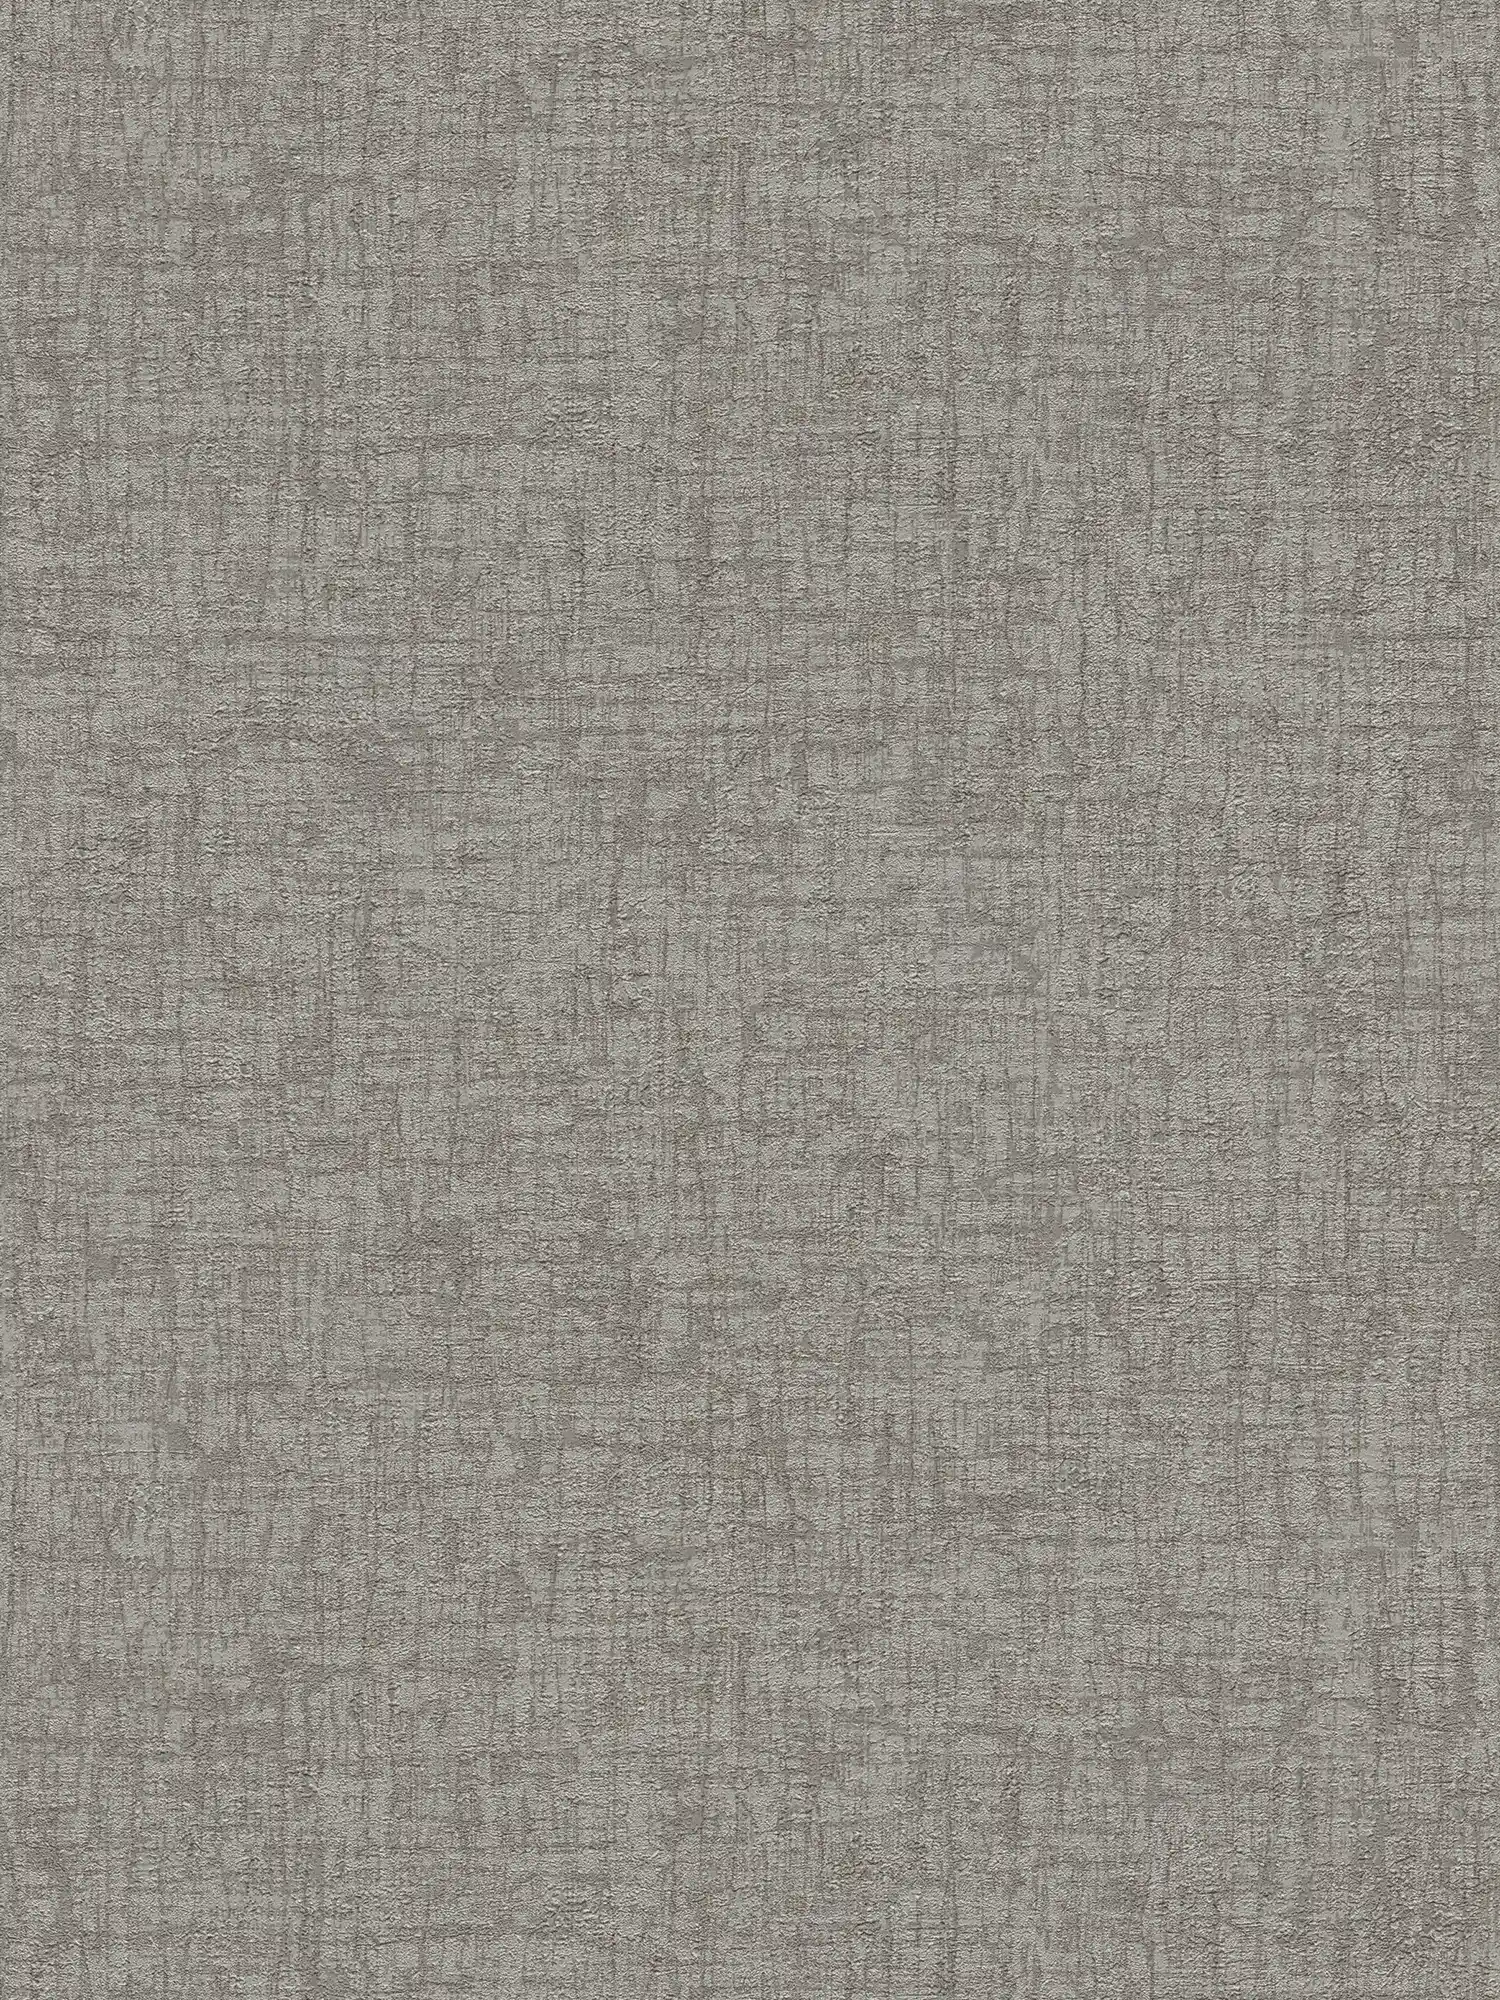         Carta da parati non tessuta con texture in look tessile - grigio, grigio scuro
    